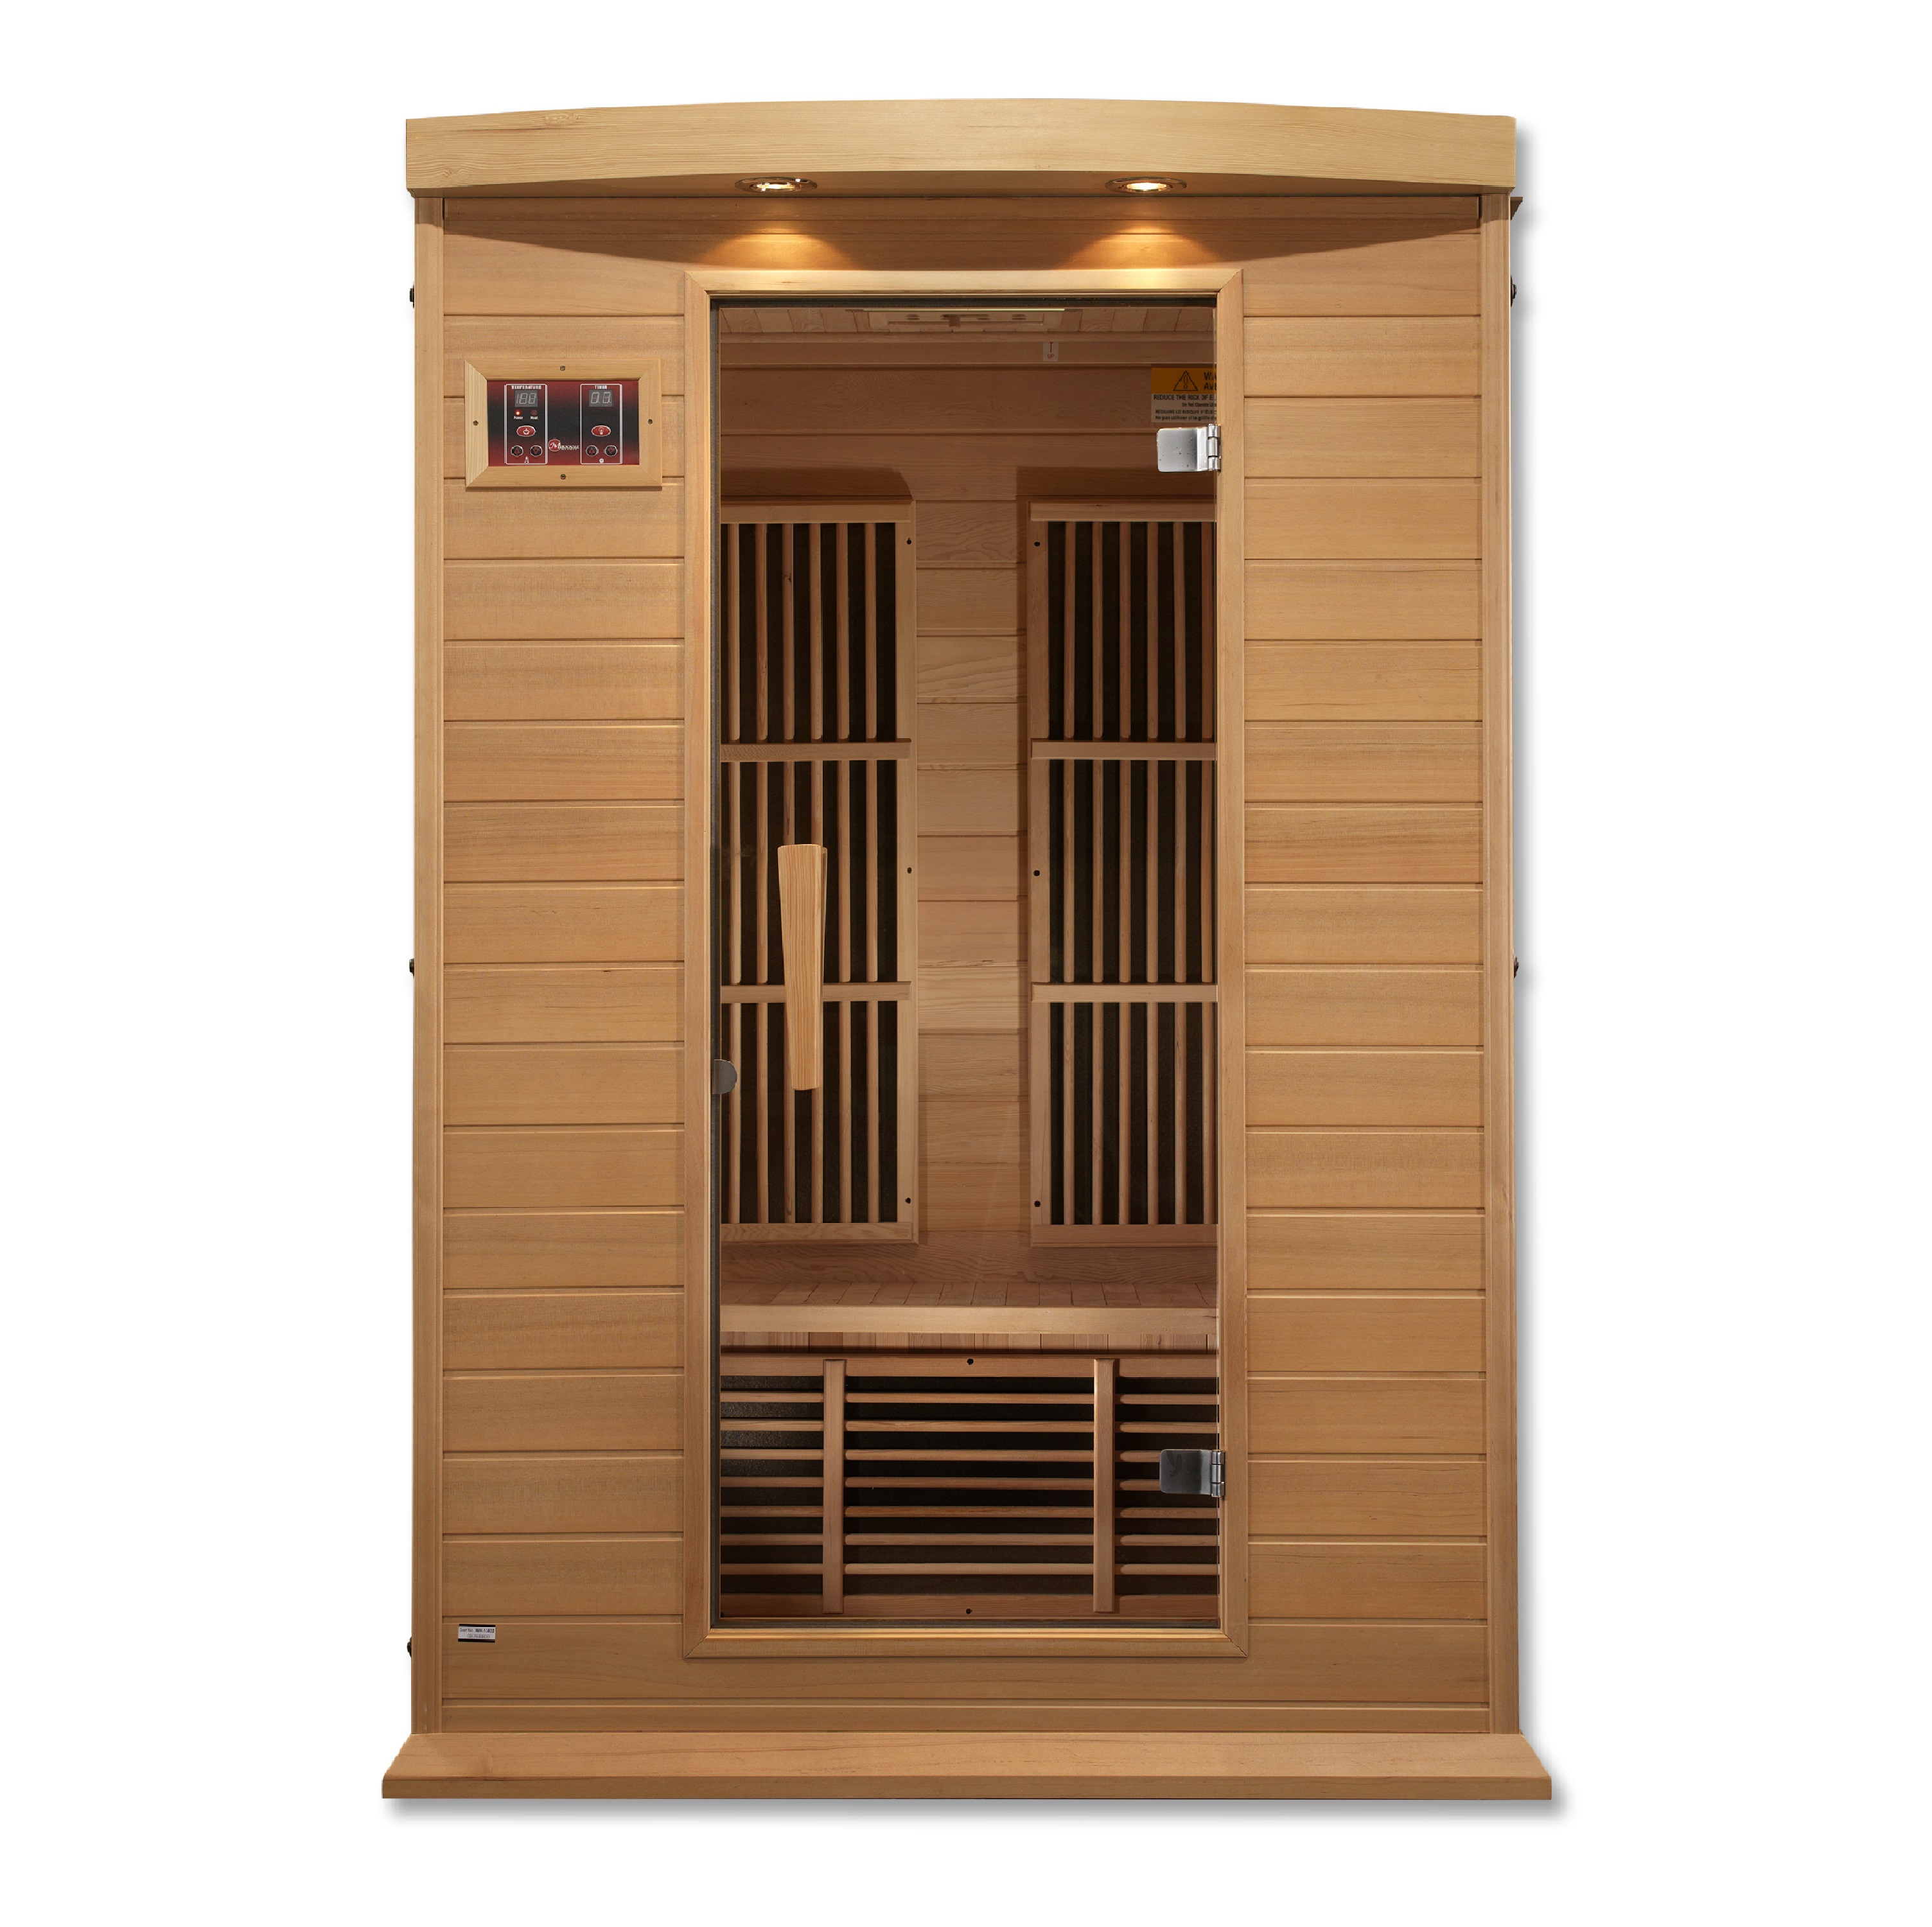 Schotel esthetisch morfine Vega 2 Person Low EMF Far Infrared Sauna in Hemlock | Celebration Saunas™  Infrared Saunas - Best Quality Home Saunas